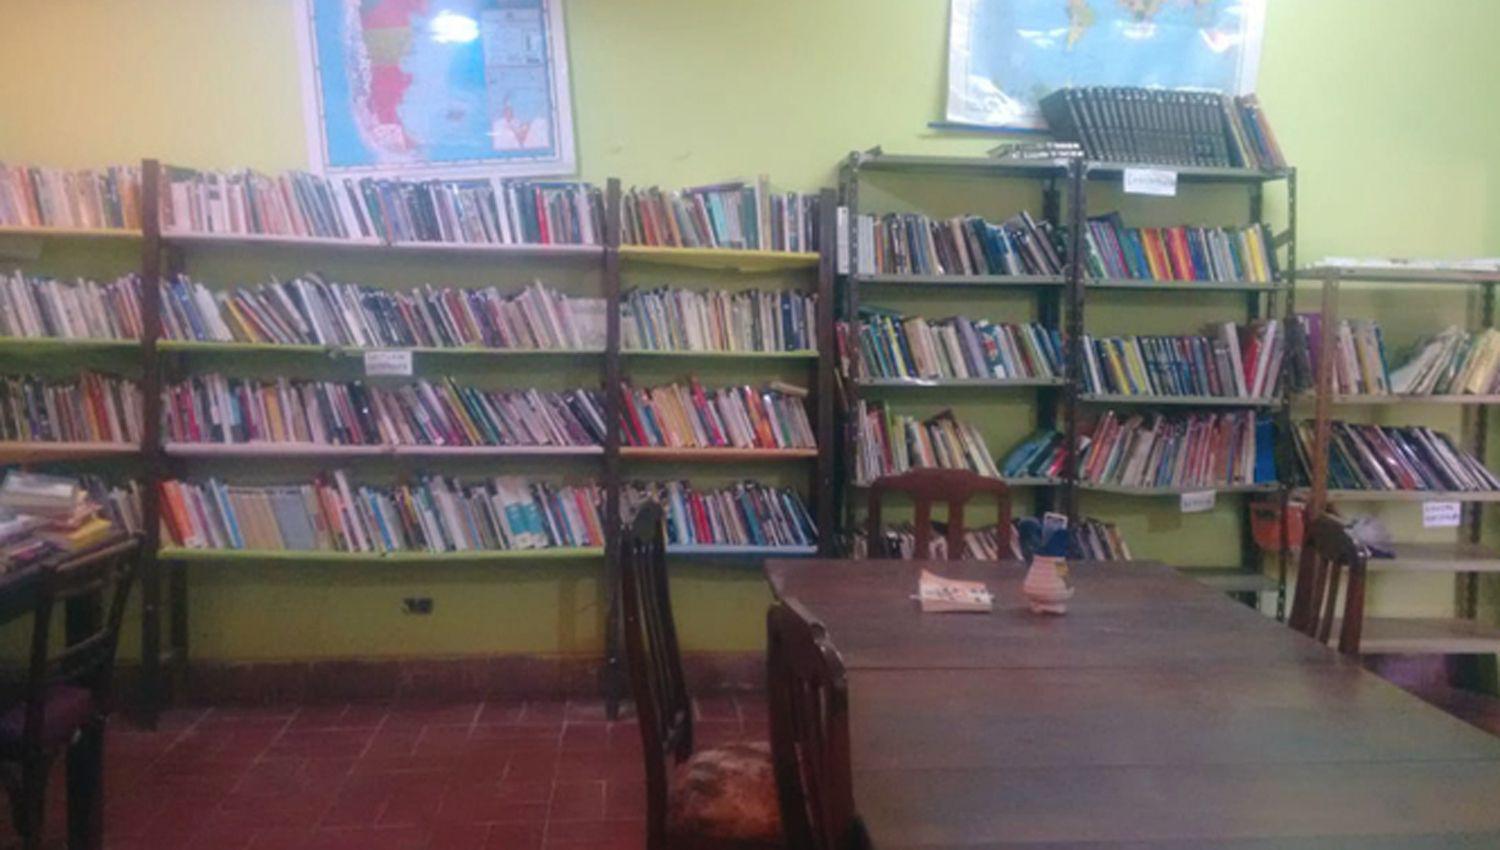 La biblioteca Mariano Moreno no atiende al p�blico debido a la pandemia de coronavirus
